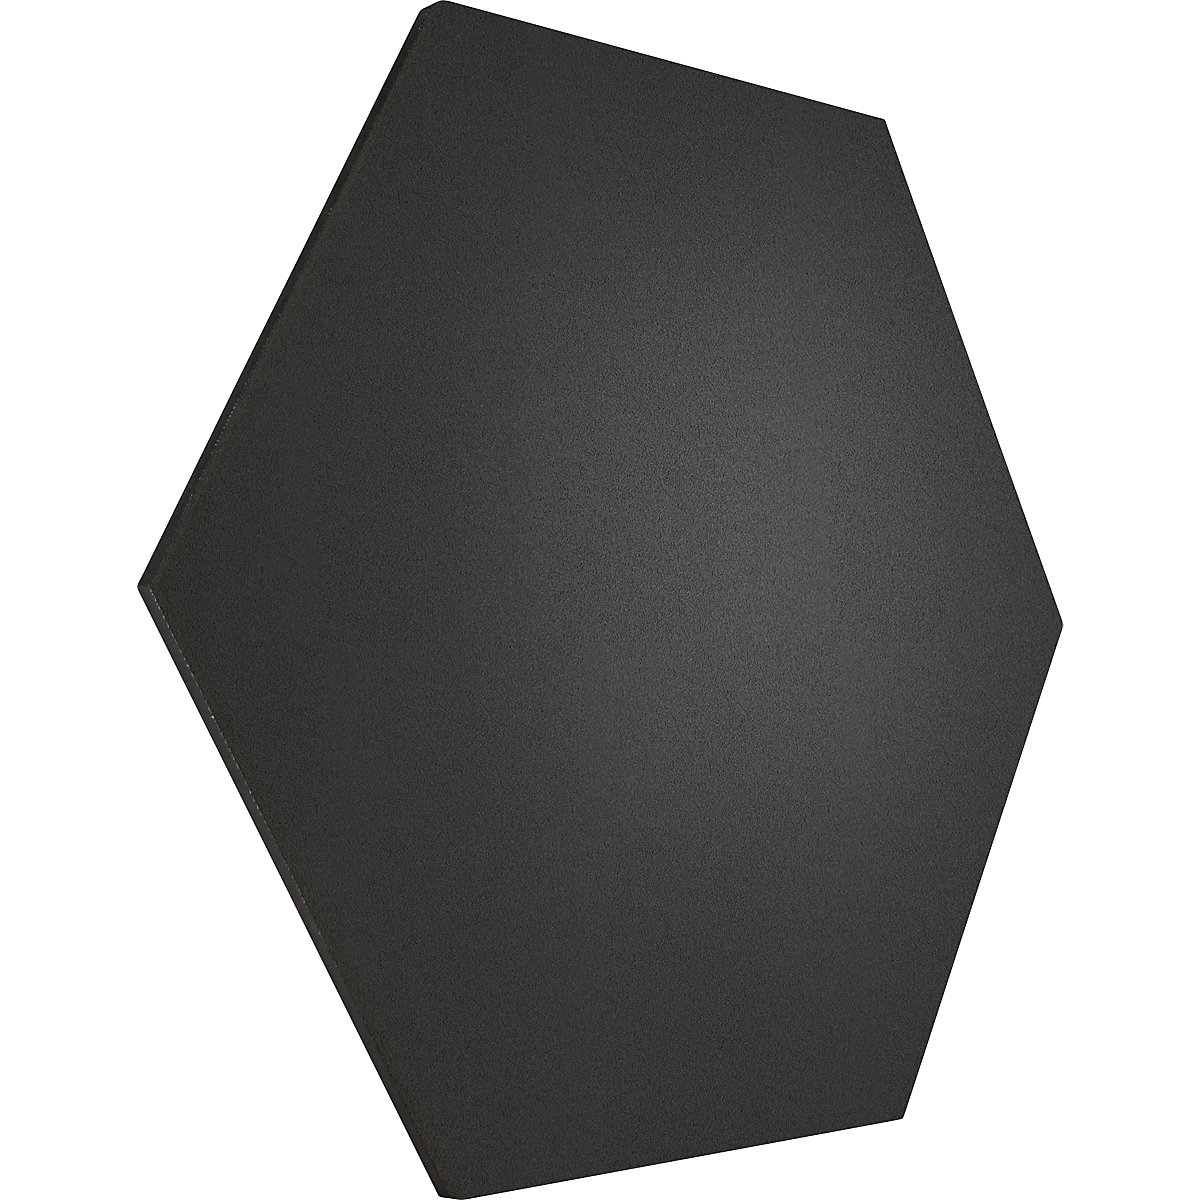 Tableau à épingles design hexagonal – Chameleon, liège, l x h 600 x 600 mm, noir-32